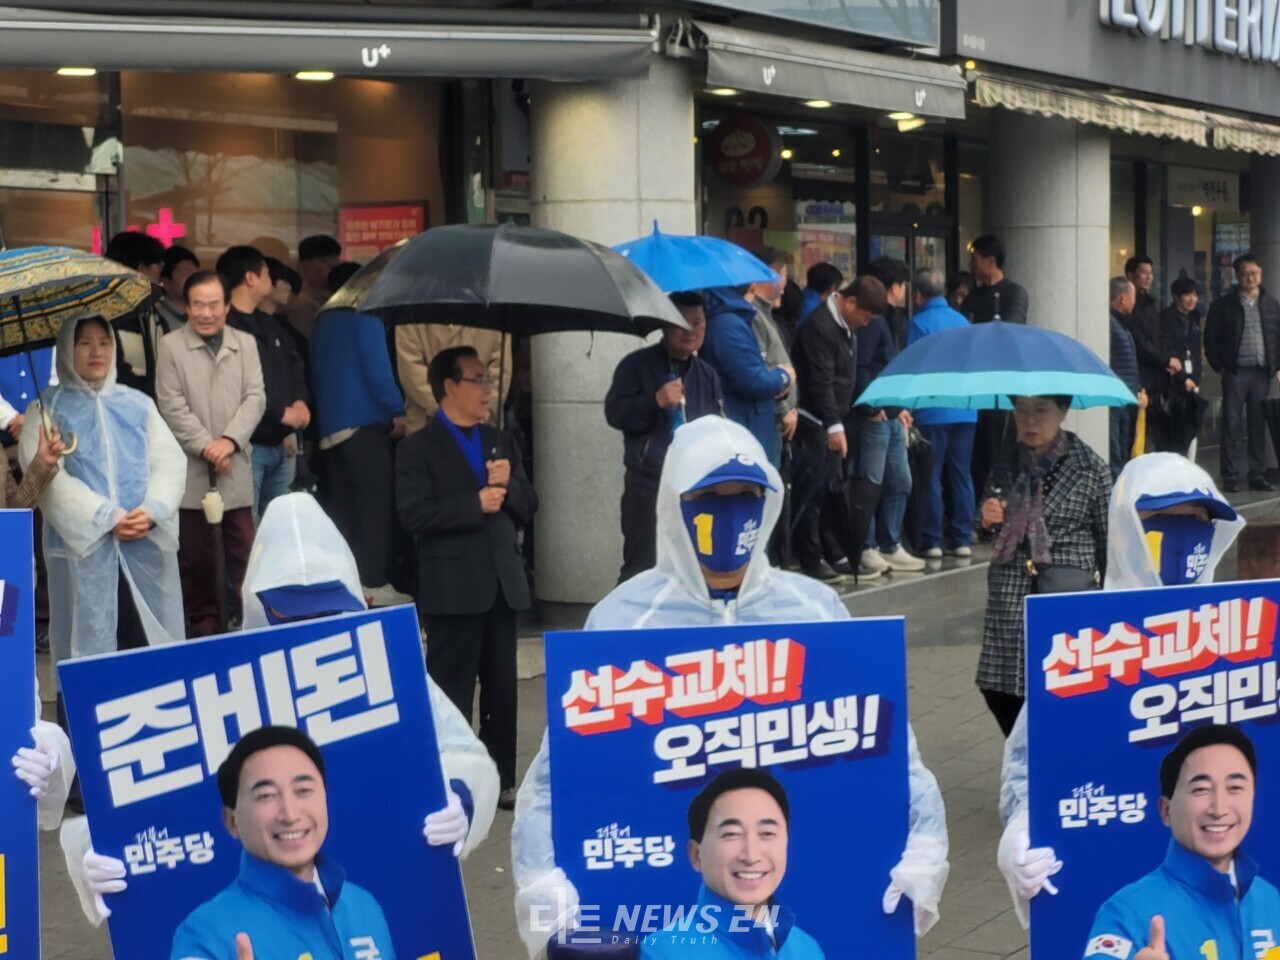 현장에는 선거 운동원들이  '선수교체, 오직민생, 준비된 박수현'이라는 글귀가 적힌 피켓을 들고 지지자들에게 호소했다. 김다소미 기자. 